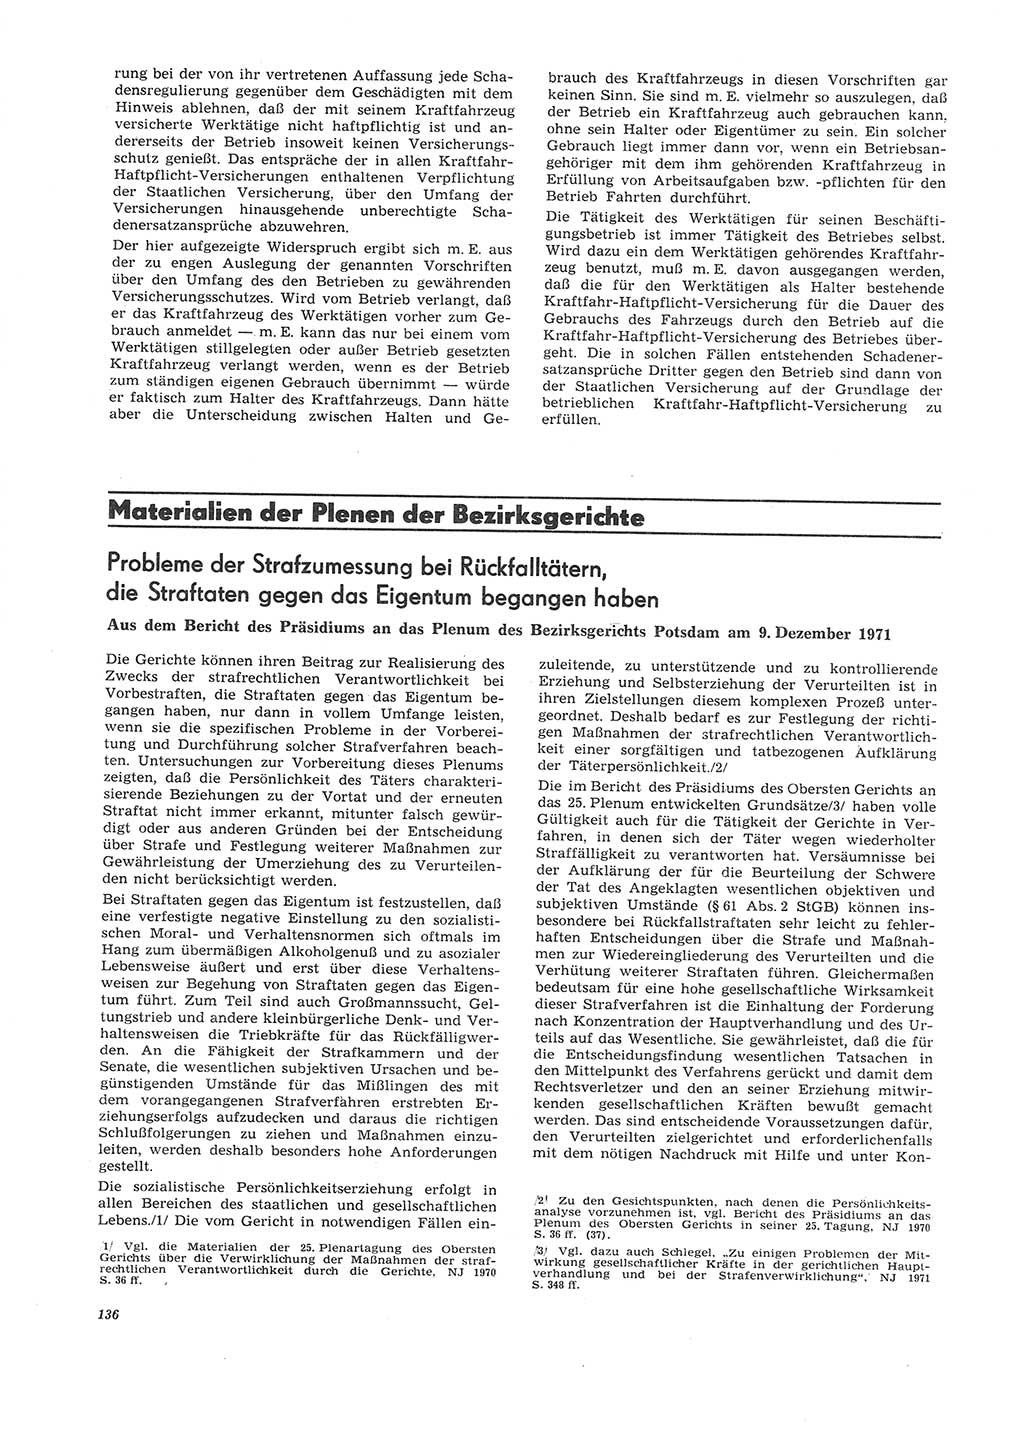 Neue Justiz (NJ), Zeitschrift für Recht und Rechtswissenschaft [Deutsche Demokratische Republik (DDR)], 26. Jahrgang 1972, Seite 136 (NJ DDR 1972, S. 136)